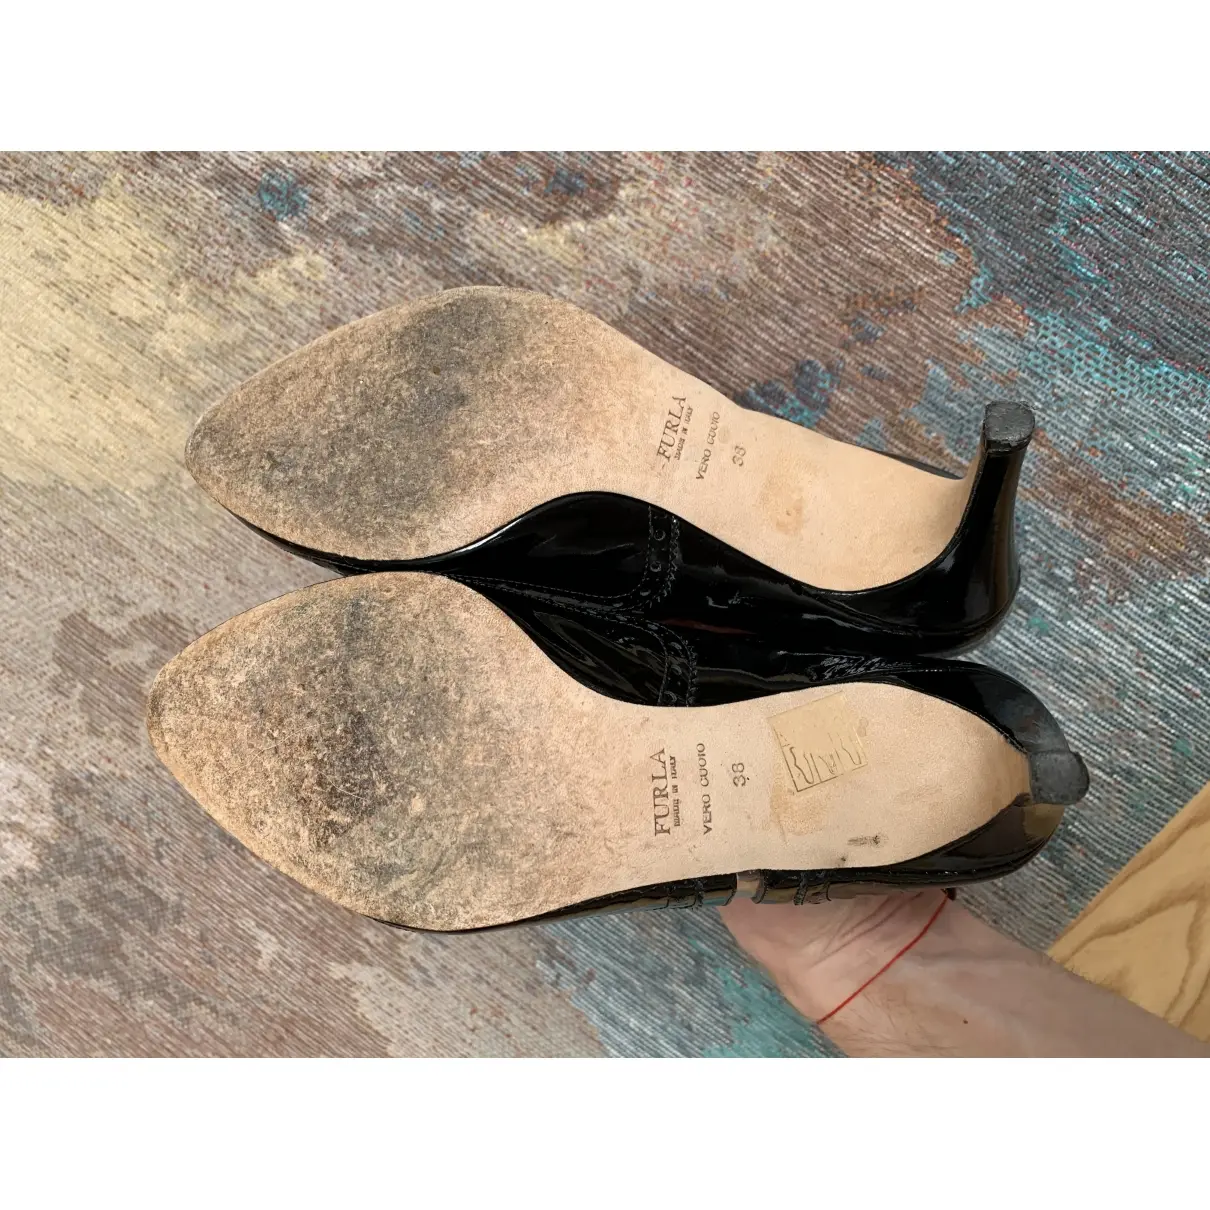 Buy Furla Patent leather heels online